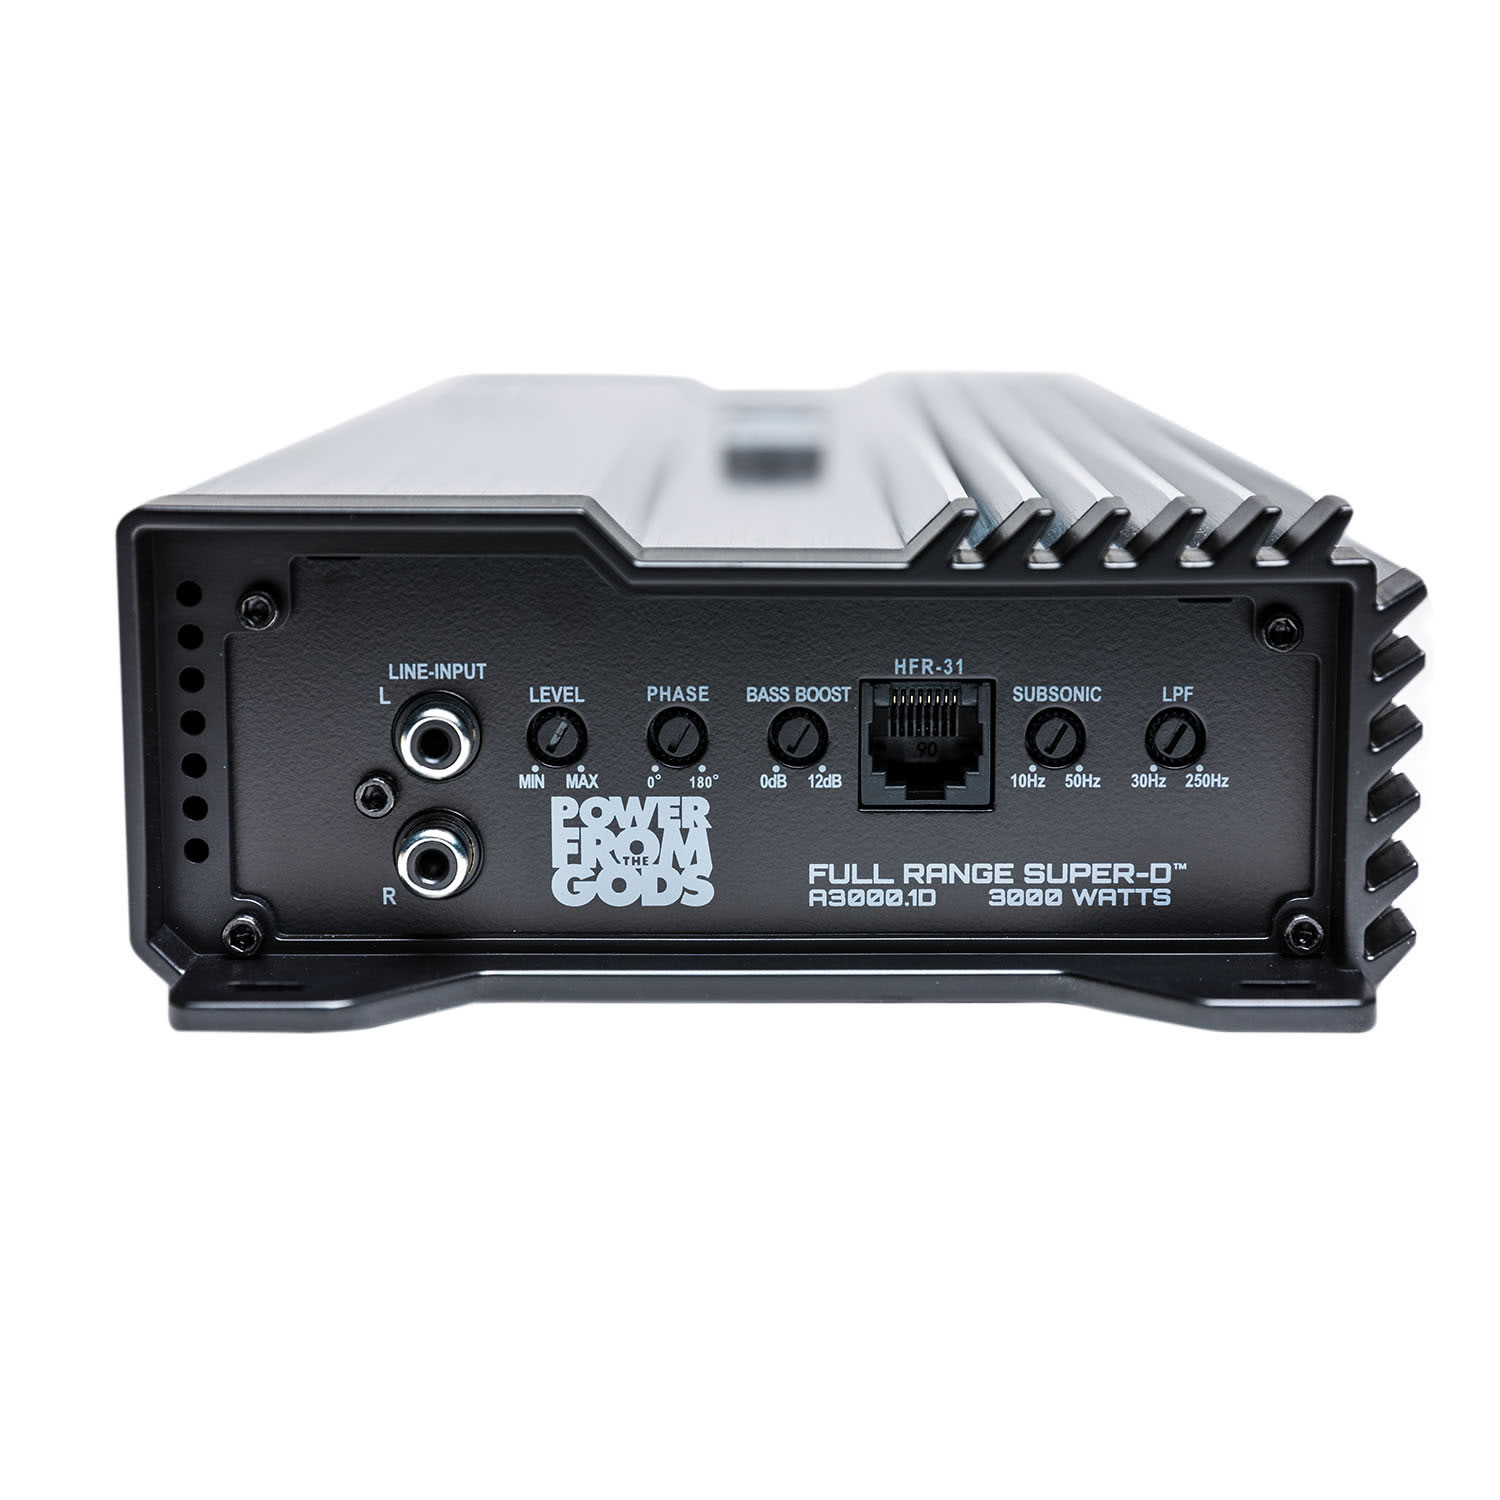 A3000.1D ALPHA 3000 Watt Amplifier | Hifonics